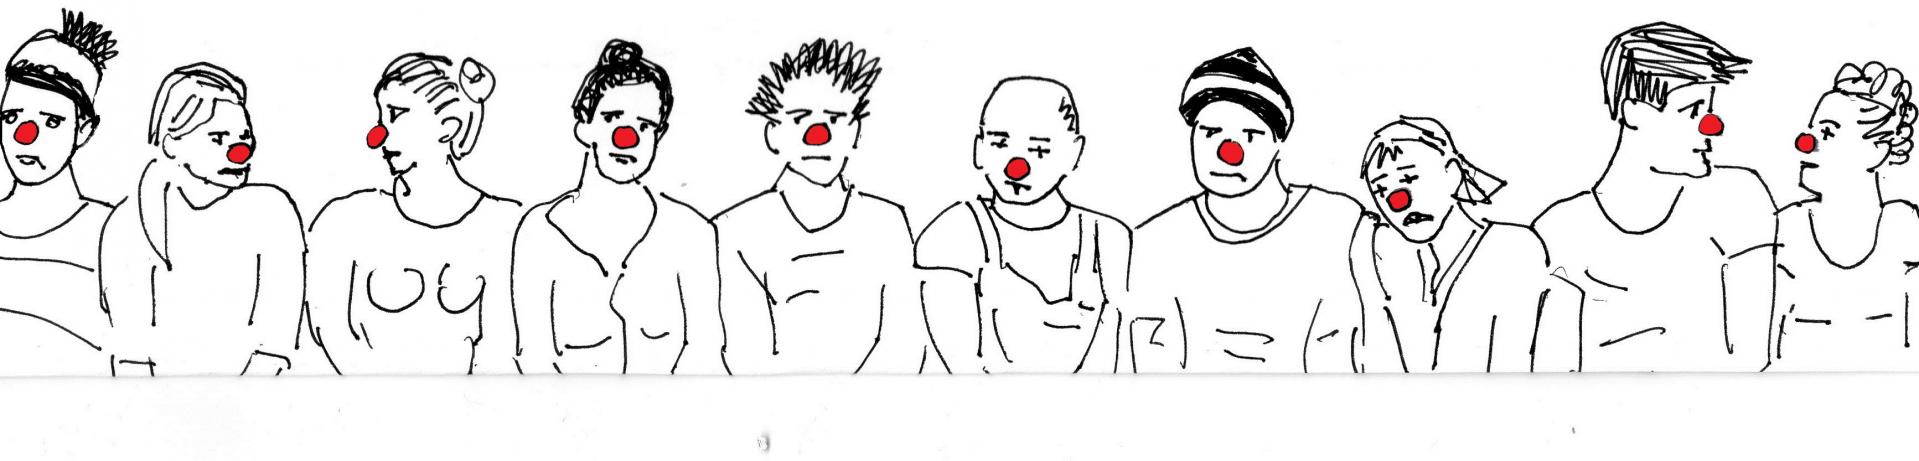 Fresque clown 1